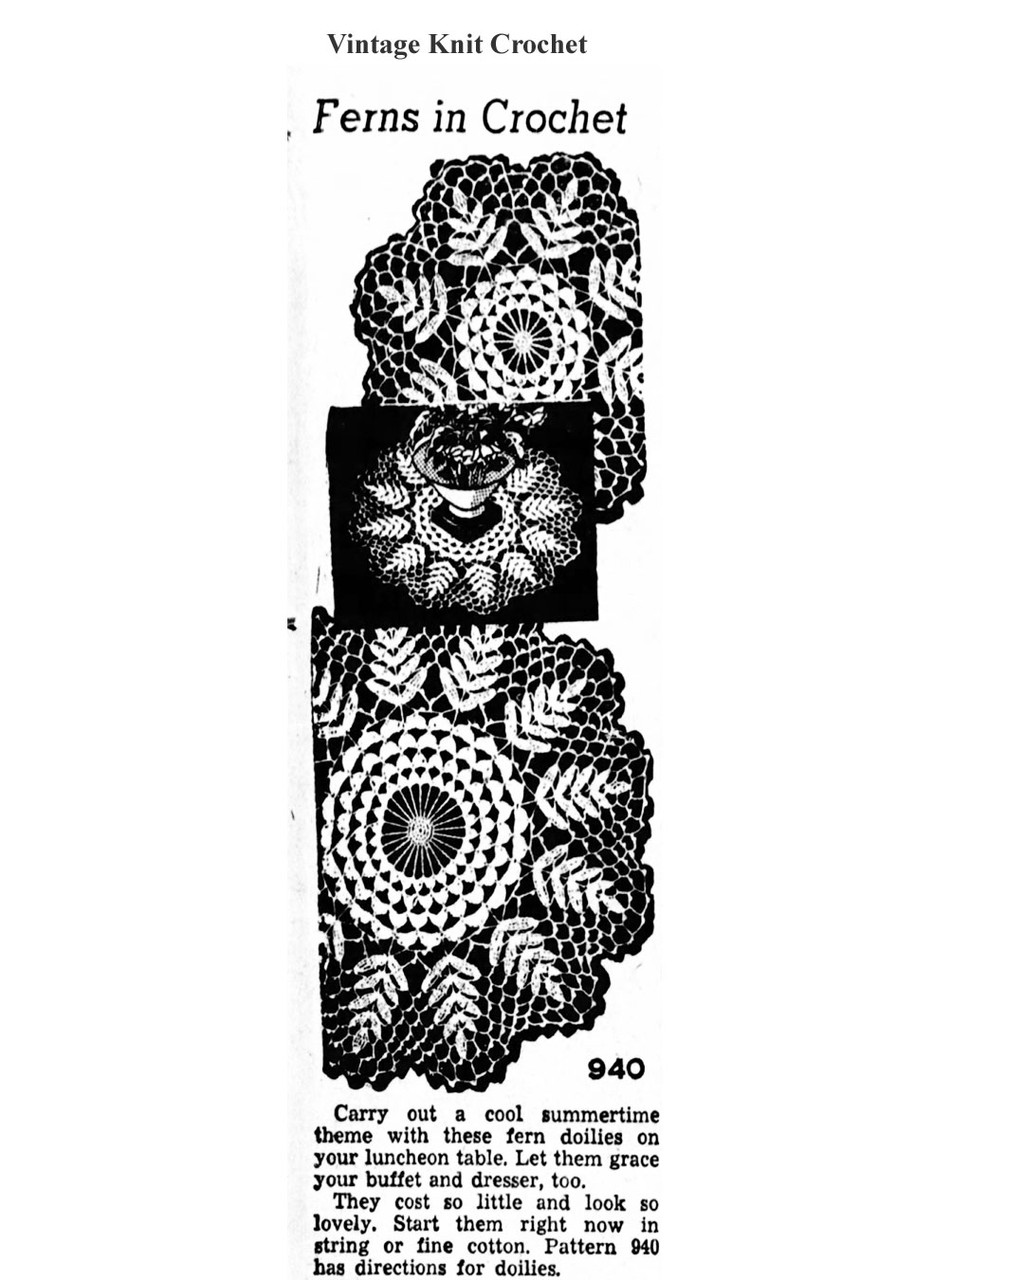 Mail Order Design 940 Crochet Doilies Newspaper Advertisement